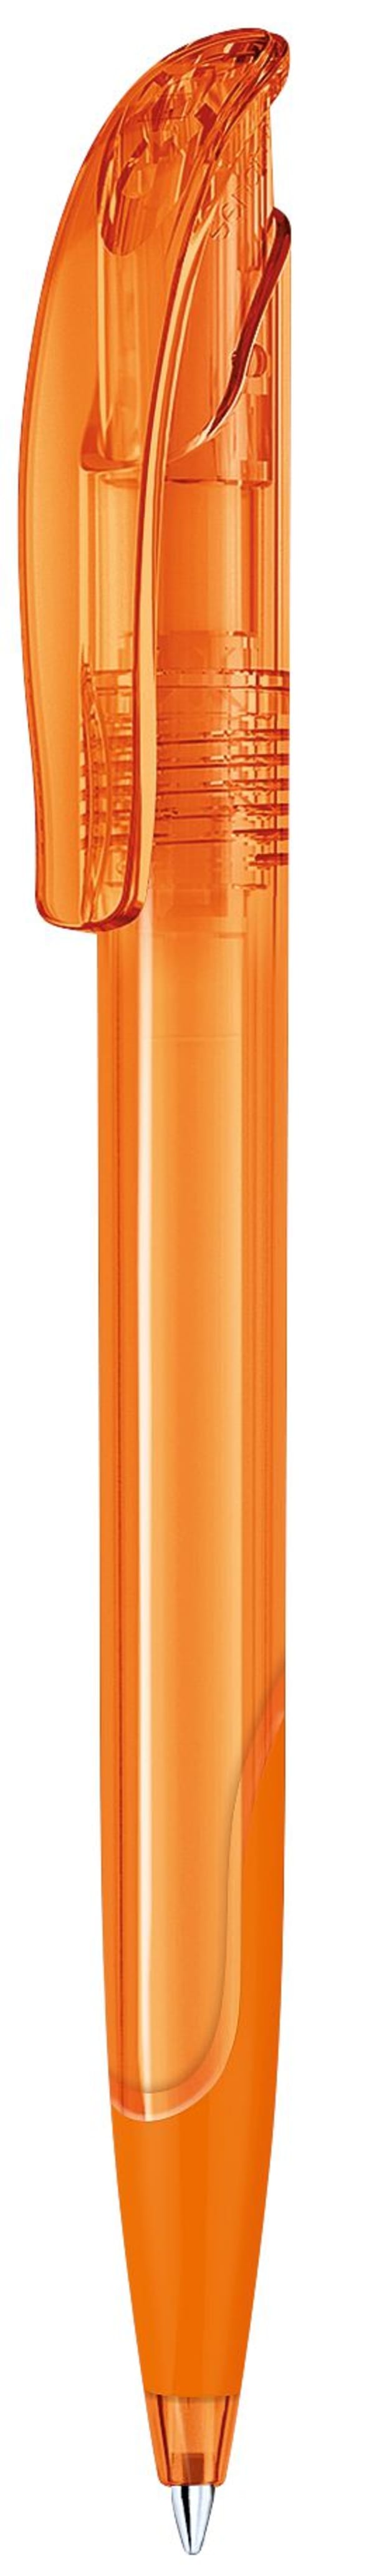 Kugelschreiber-Challenger-Clear-SG-blau-dokumentenecht-Orange-Kunststoff-Frontansicht-1